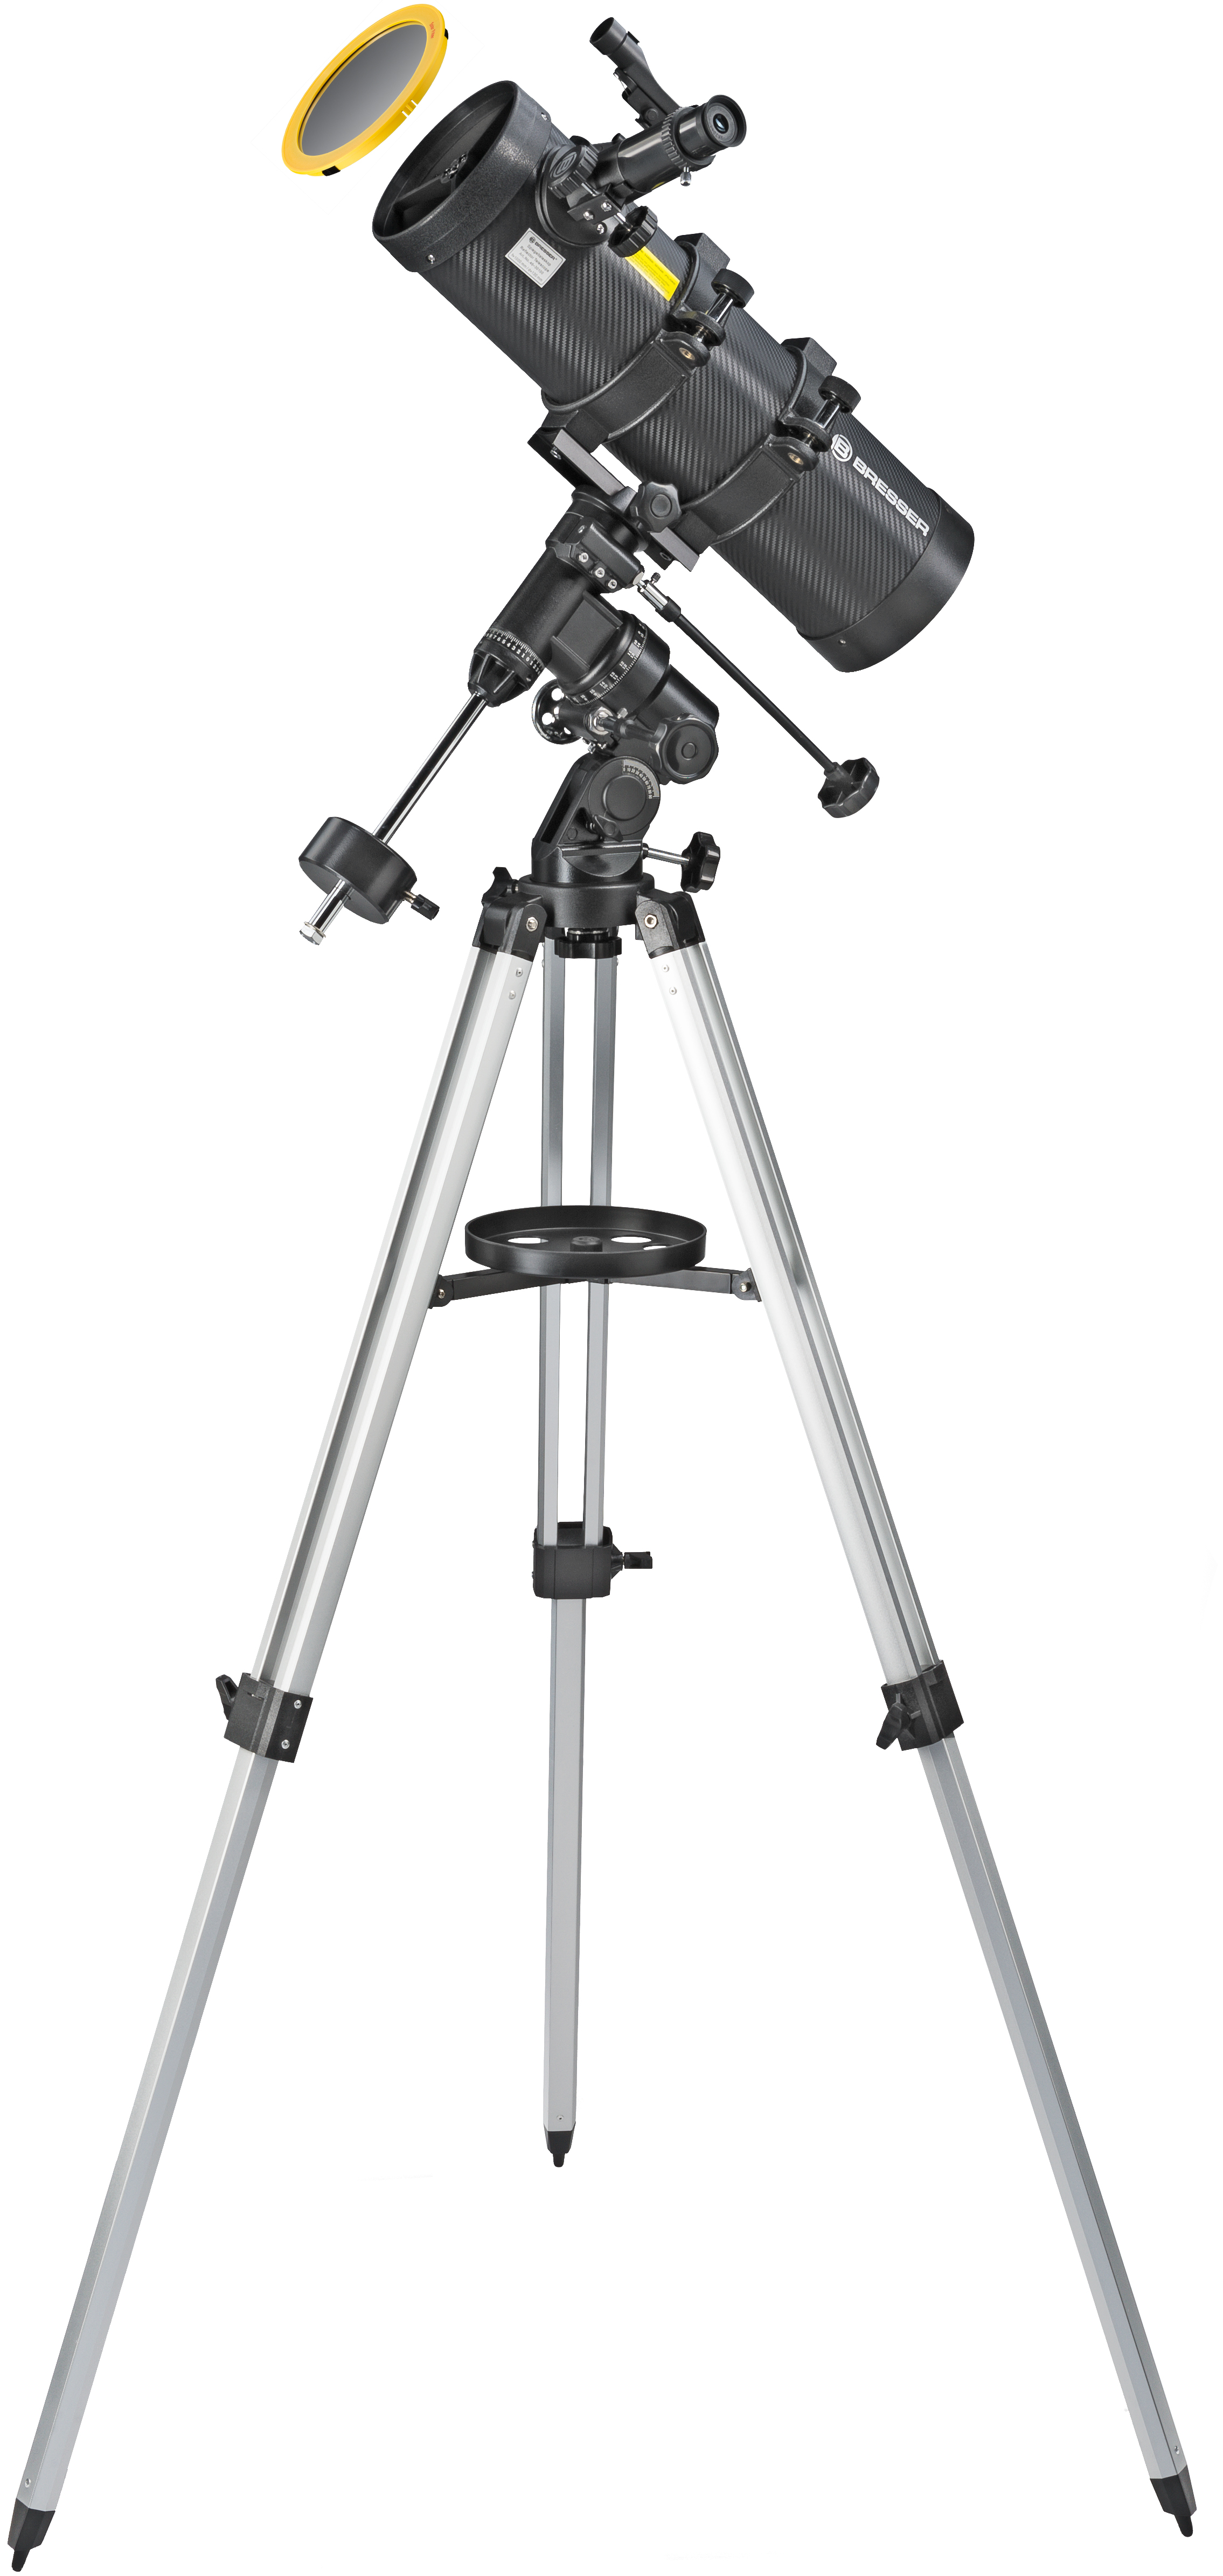  Telescopio riflettore newtoniano BRESSER Spica 130/1000 EQ3 con adattatore per fotocamera smartphone 